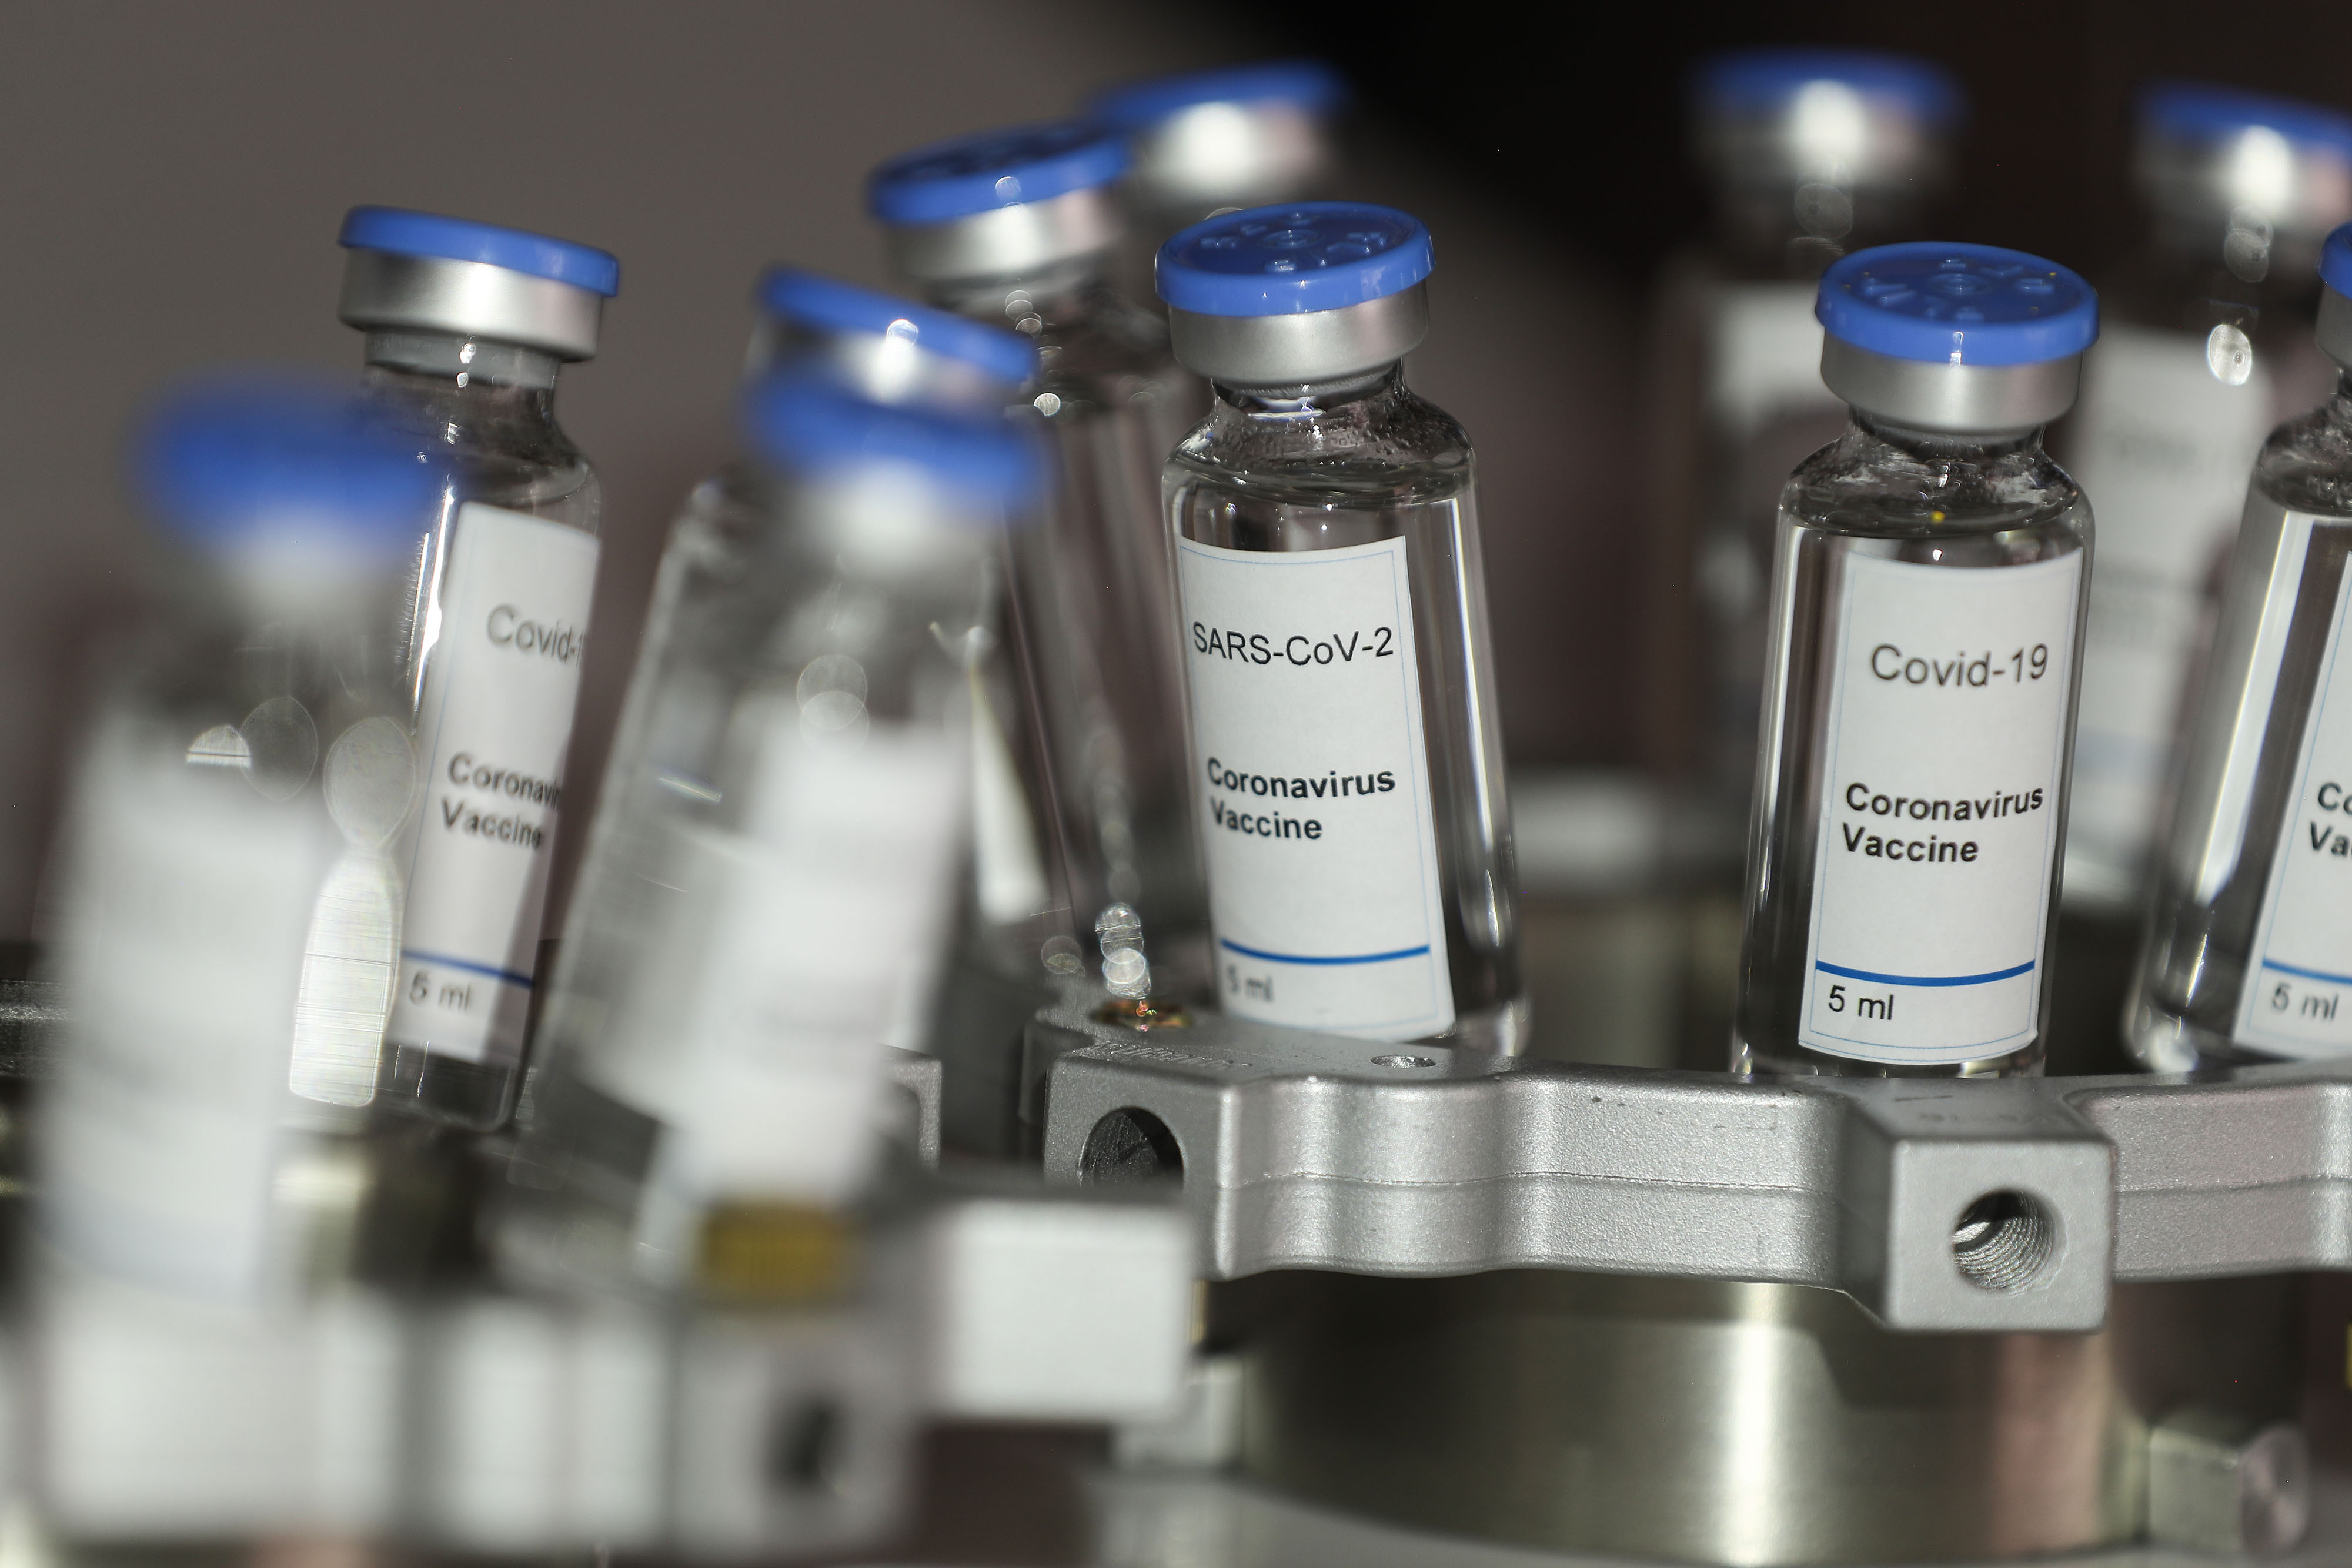 Как приготовить вакцину коронавируса